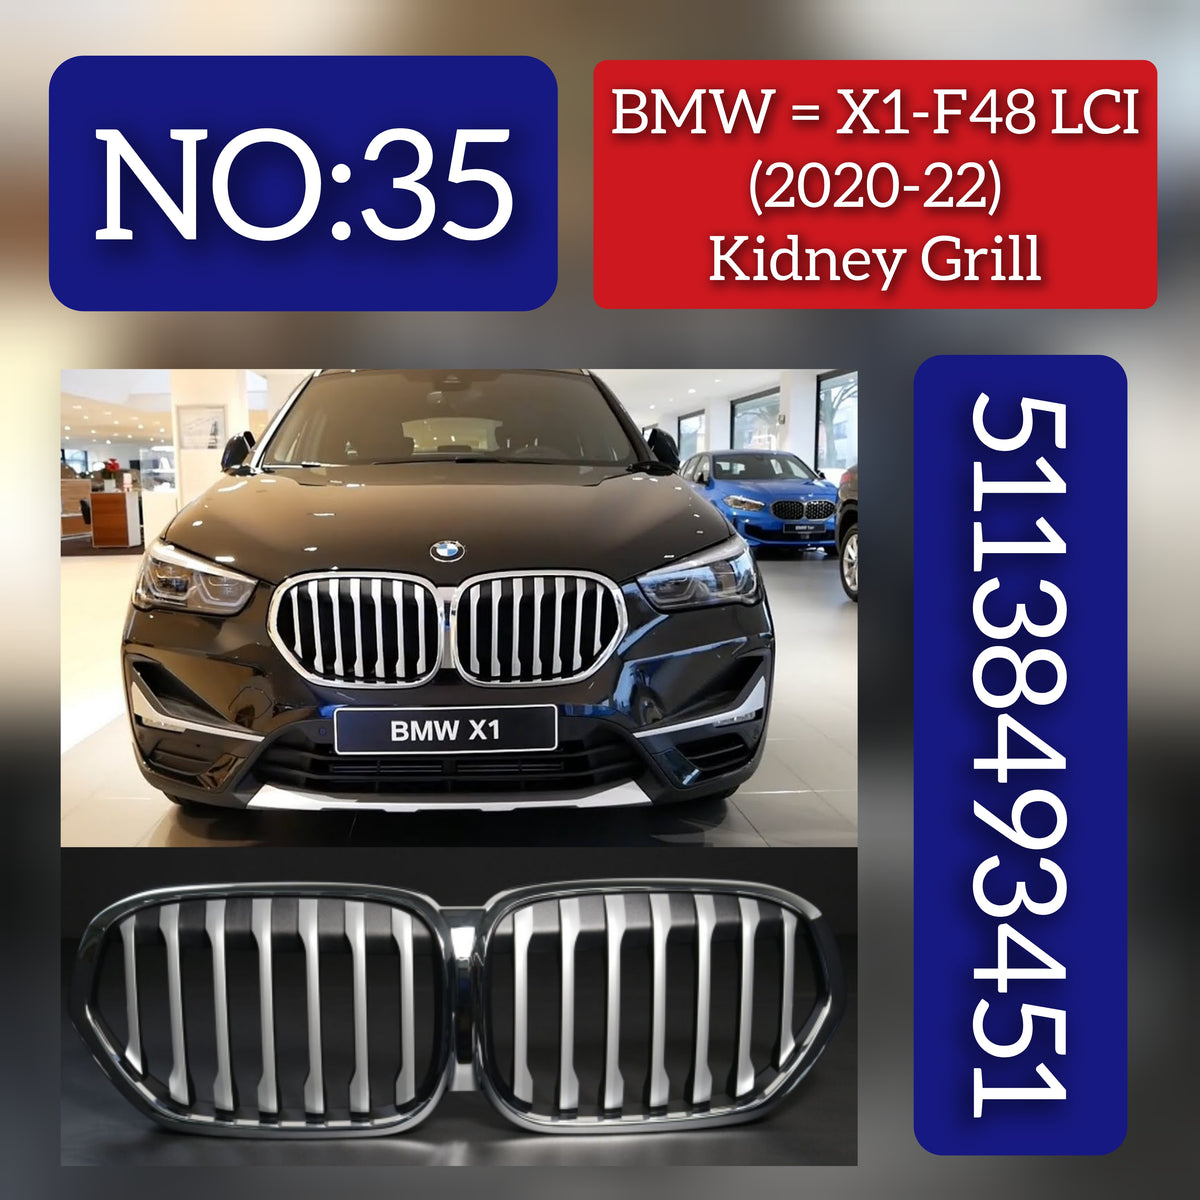 BMW = X1-F48 LCI (2020-22) Kidney Grill 51138493451 Tag 35